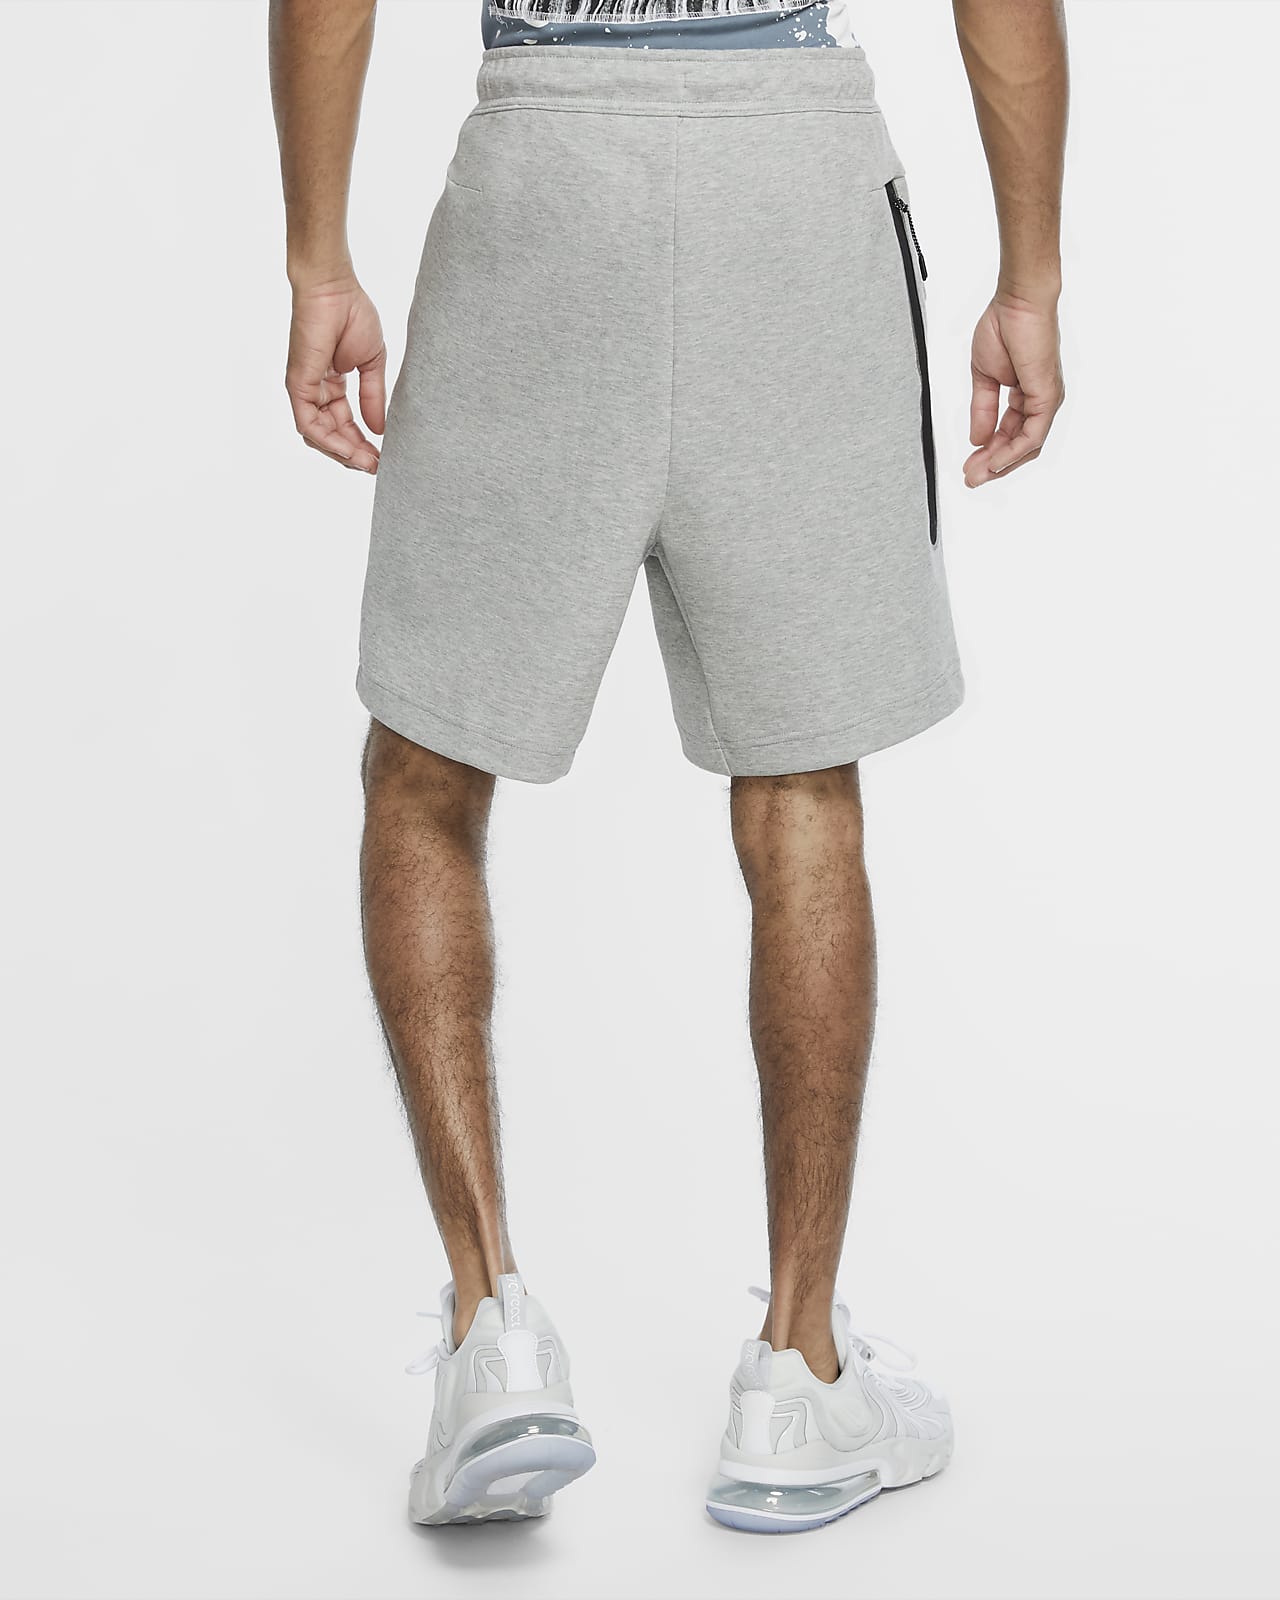 shorts nike tech fleece masculino